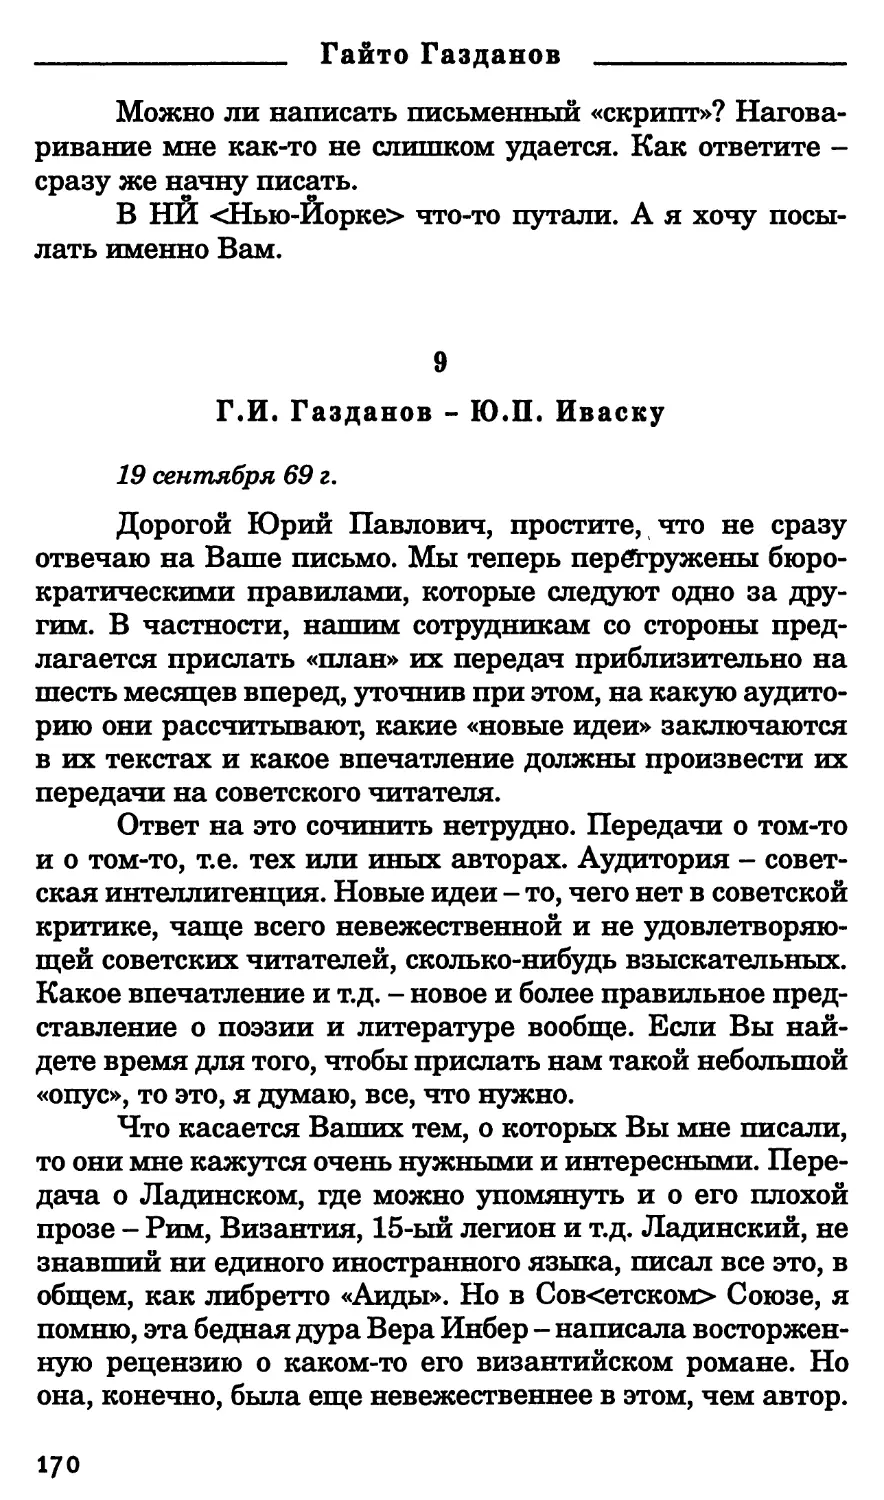 9. Г.И. Газданов - Ю.П. Иваску. 19 сентября 1969 г.